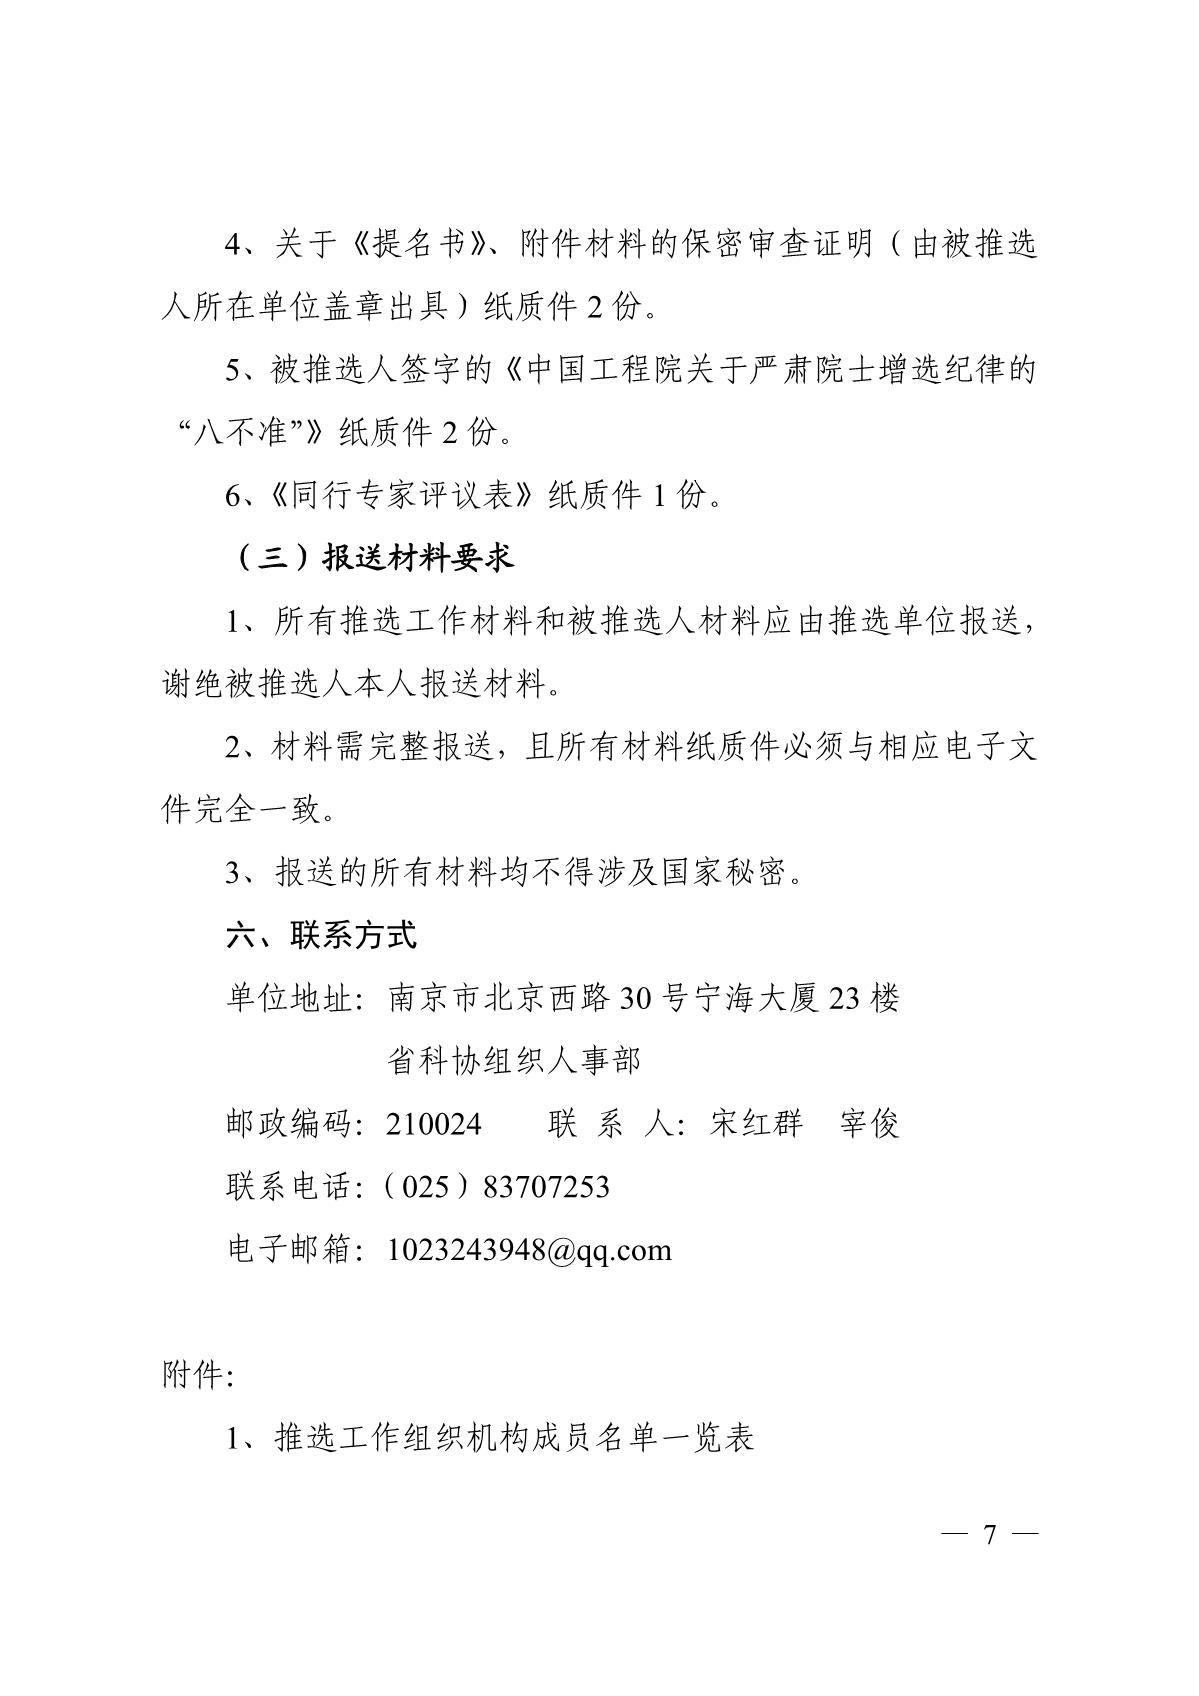 关于组织推选2021年中国工程院院士候选人的通知_7.JPG